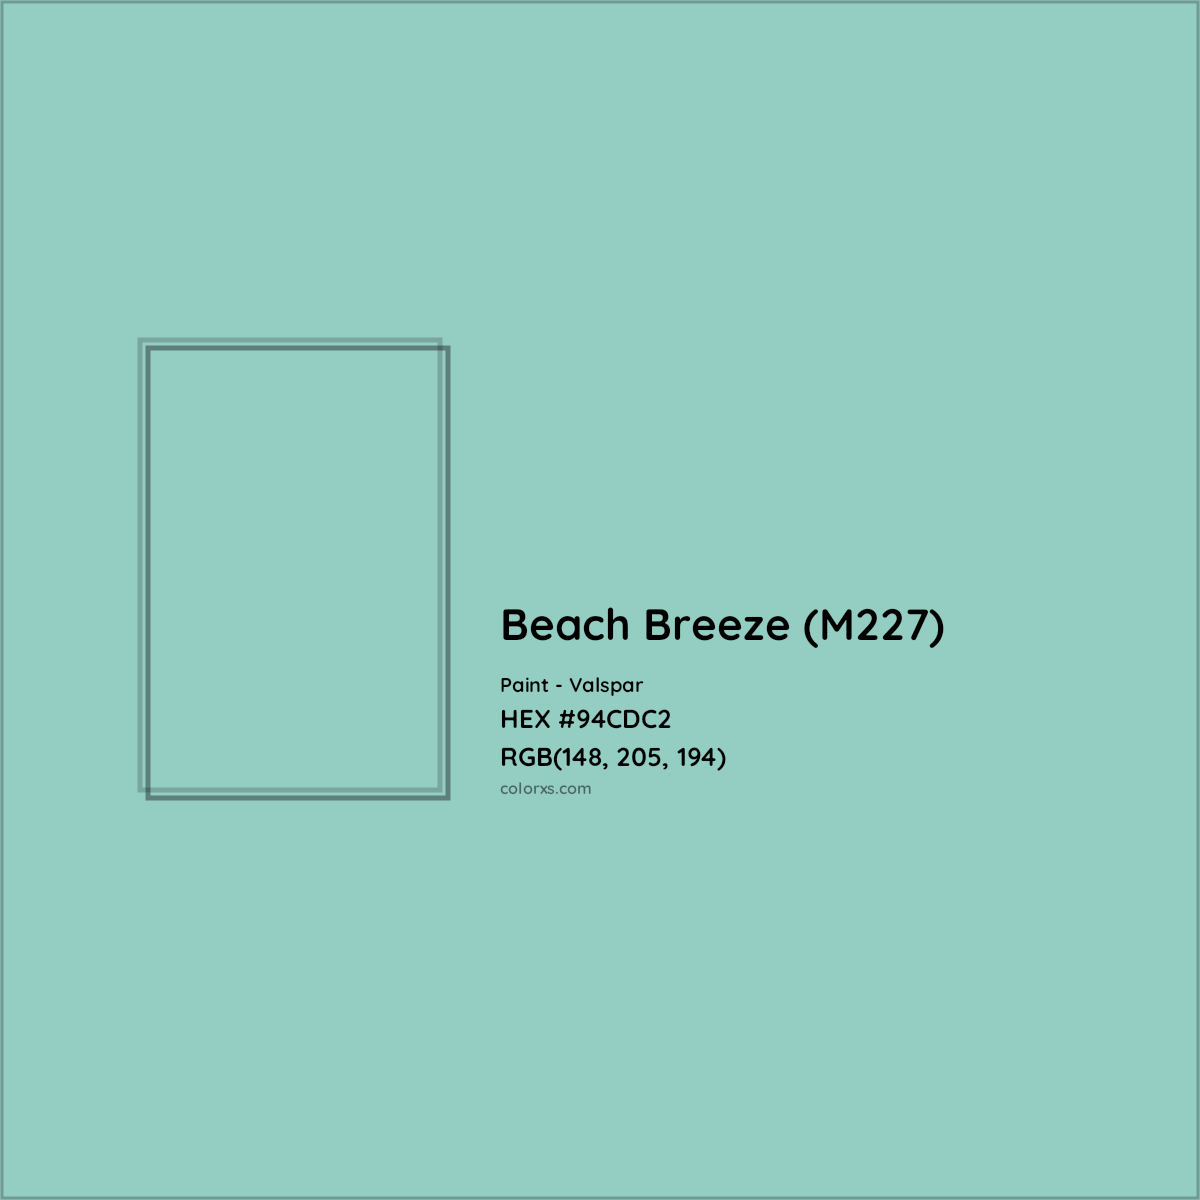 HEX #94CDC2 Beach Breeze (M227) Paint Valspar - Color Code